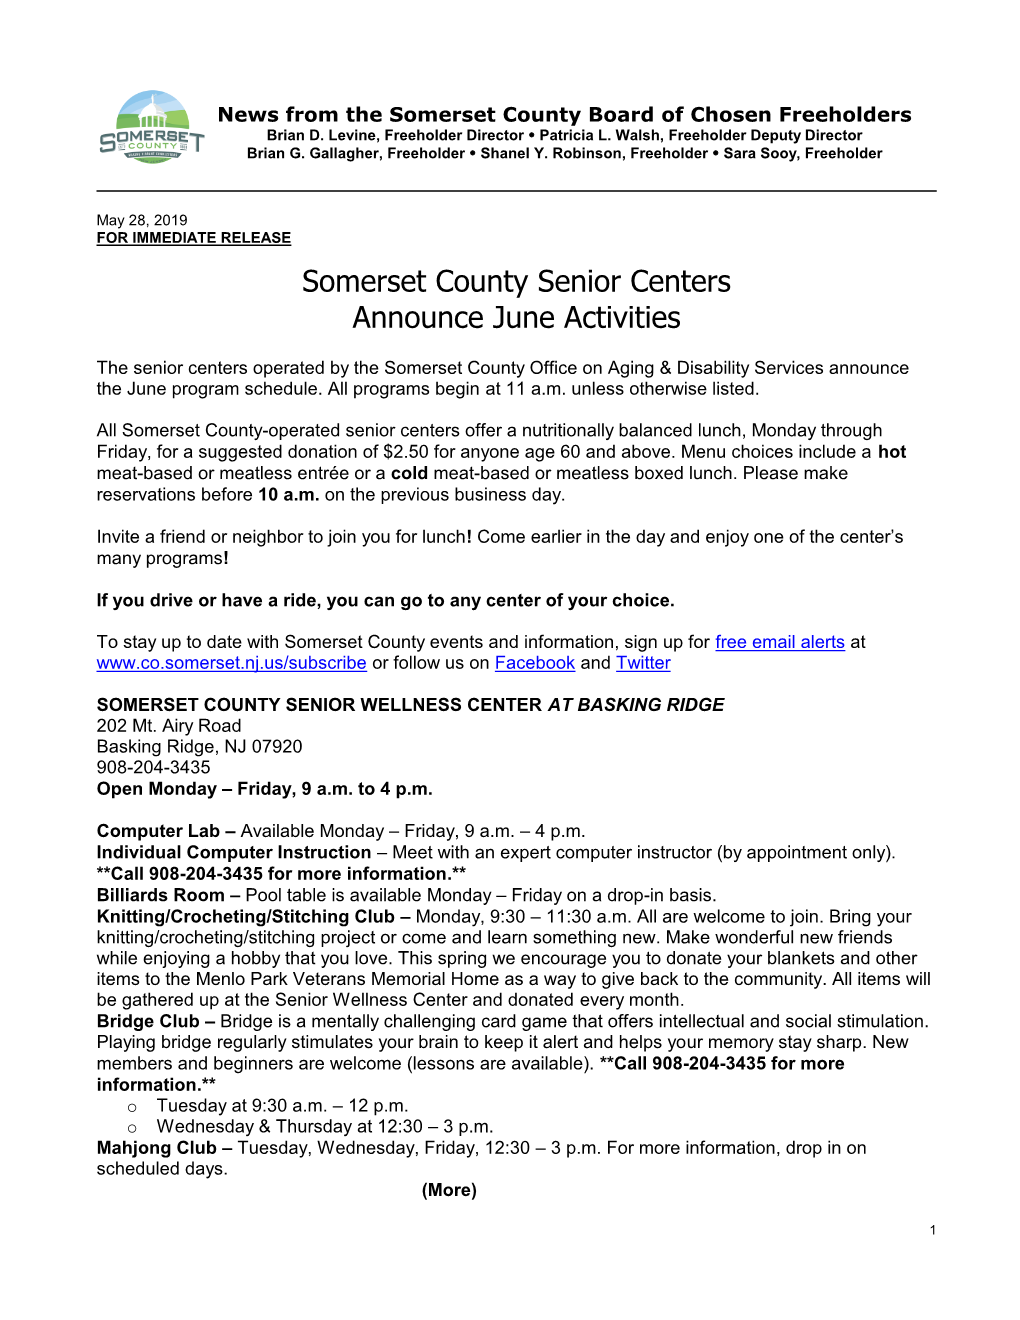 June Senior Center Programs